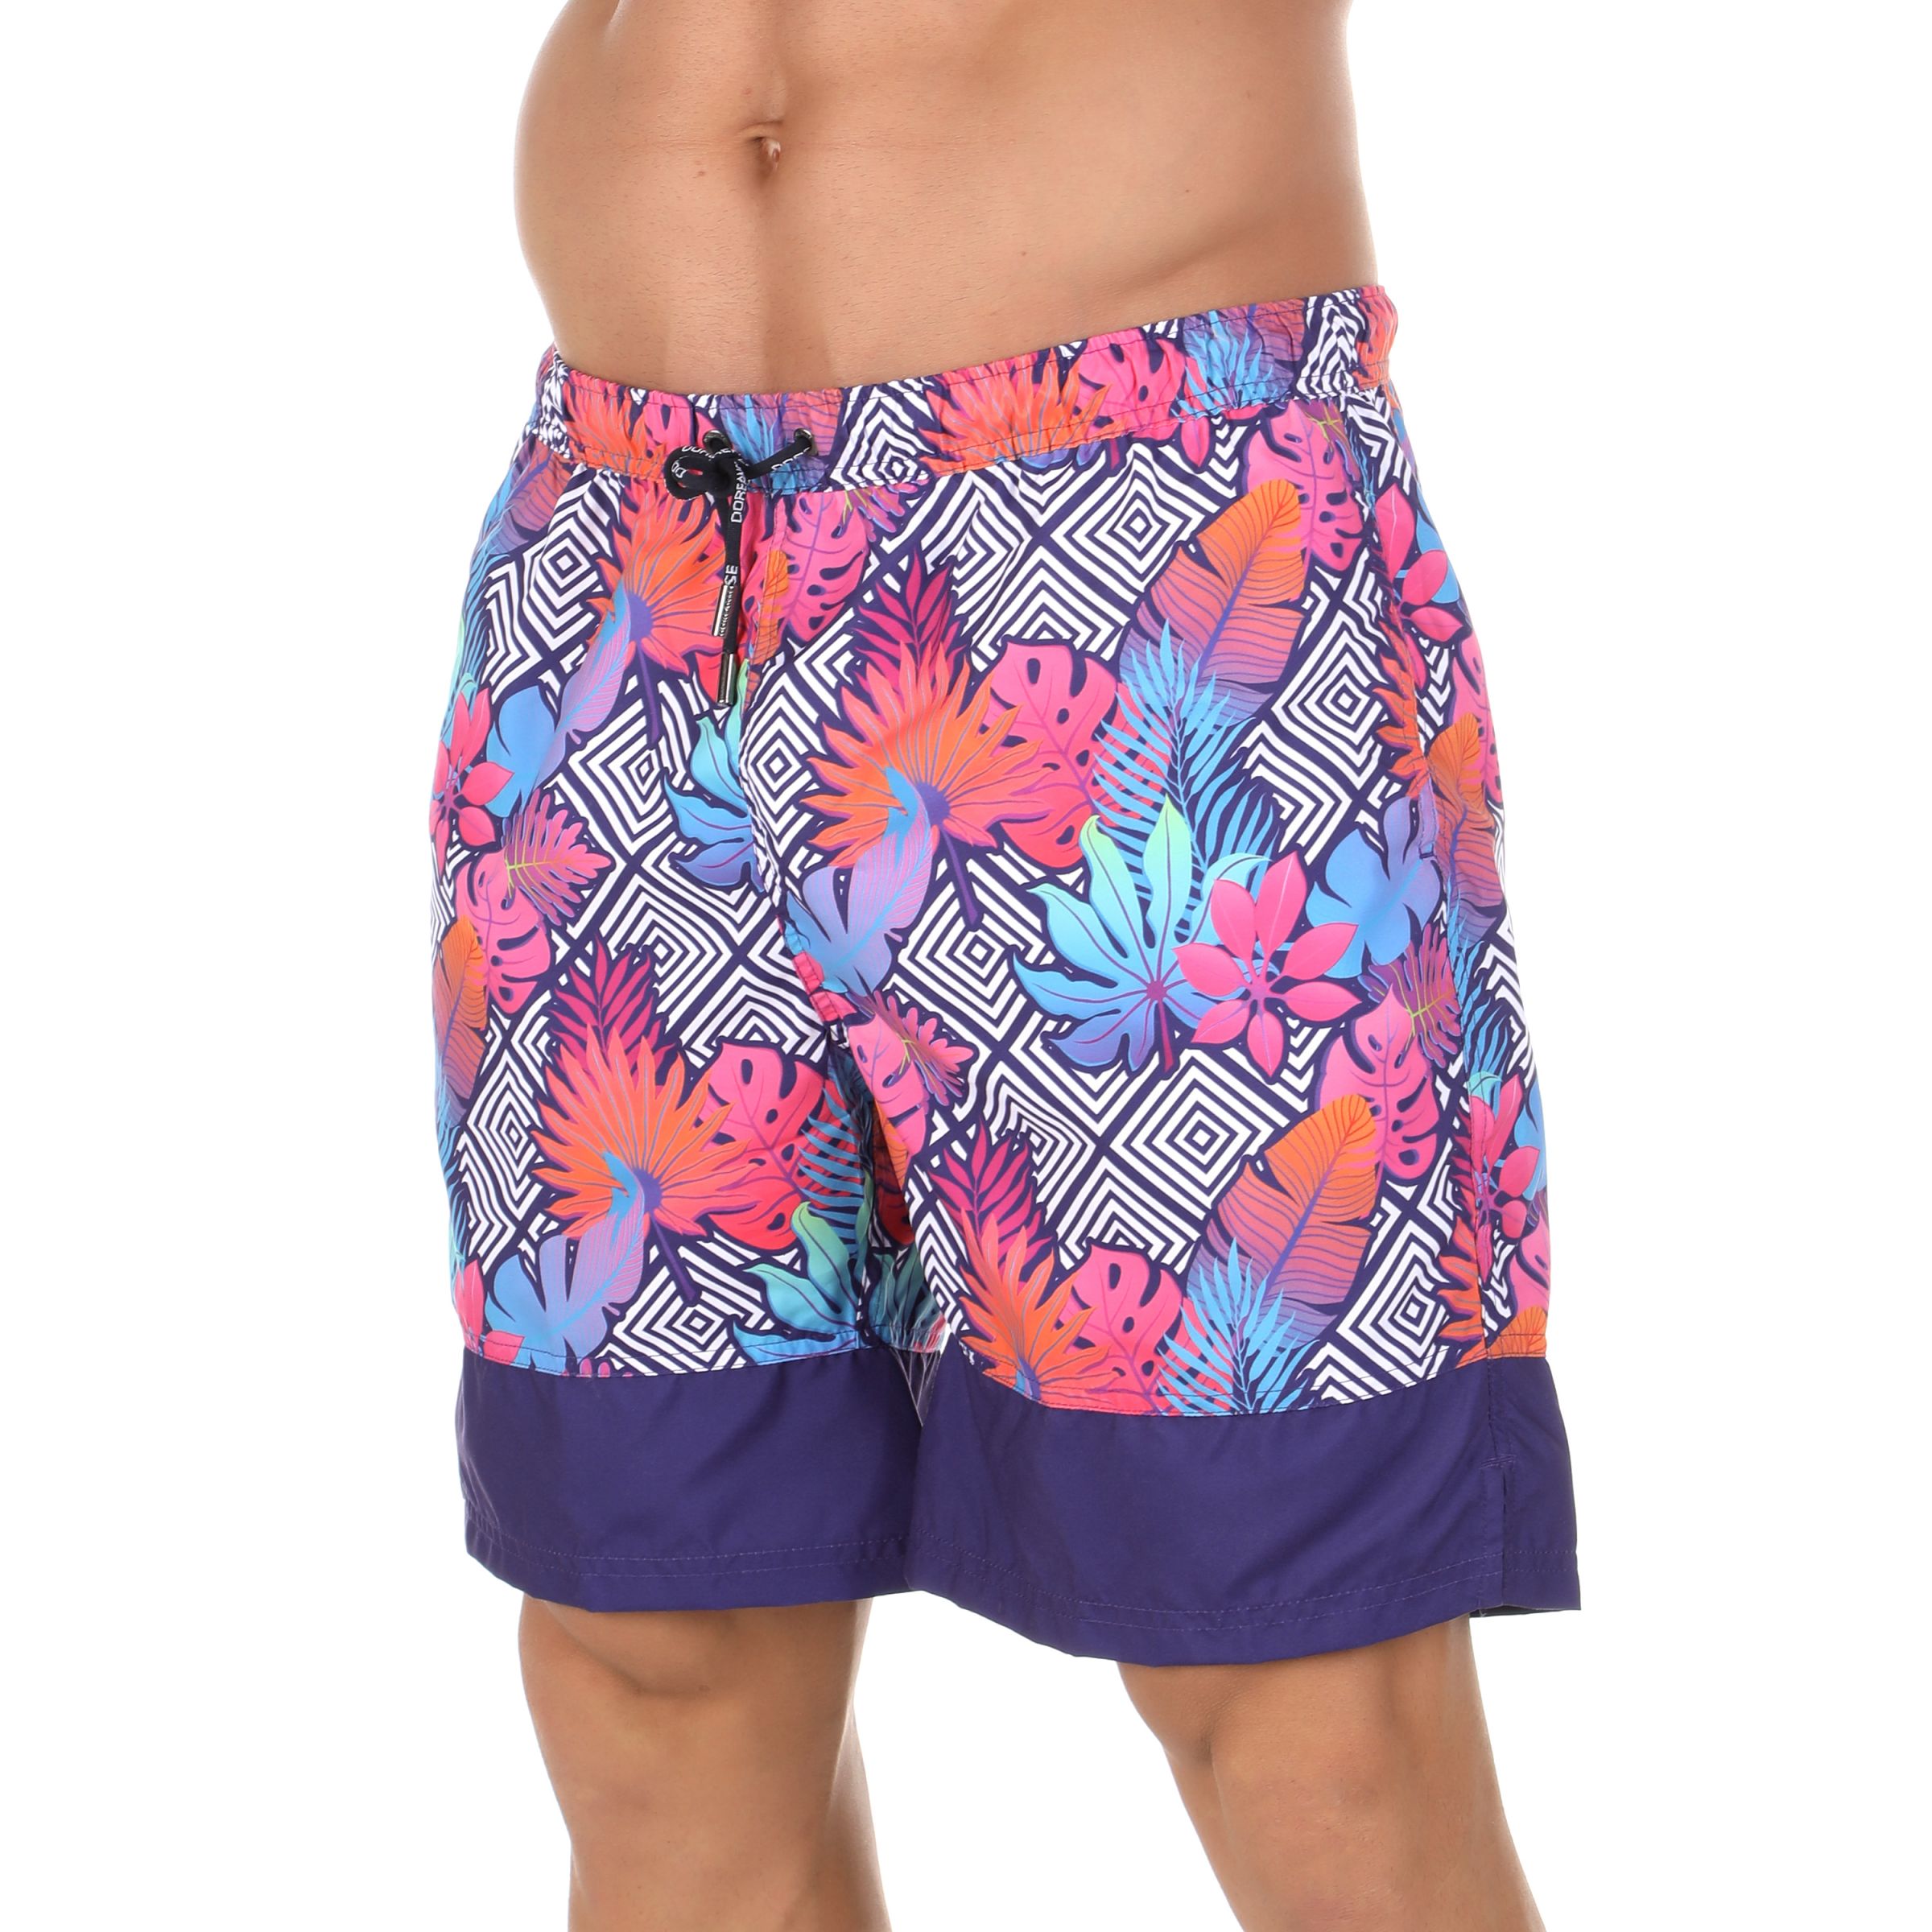 Мужские шорты для плавания с ярким принтом Doreanse Bora Bora.